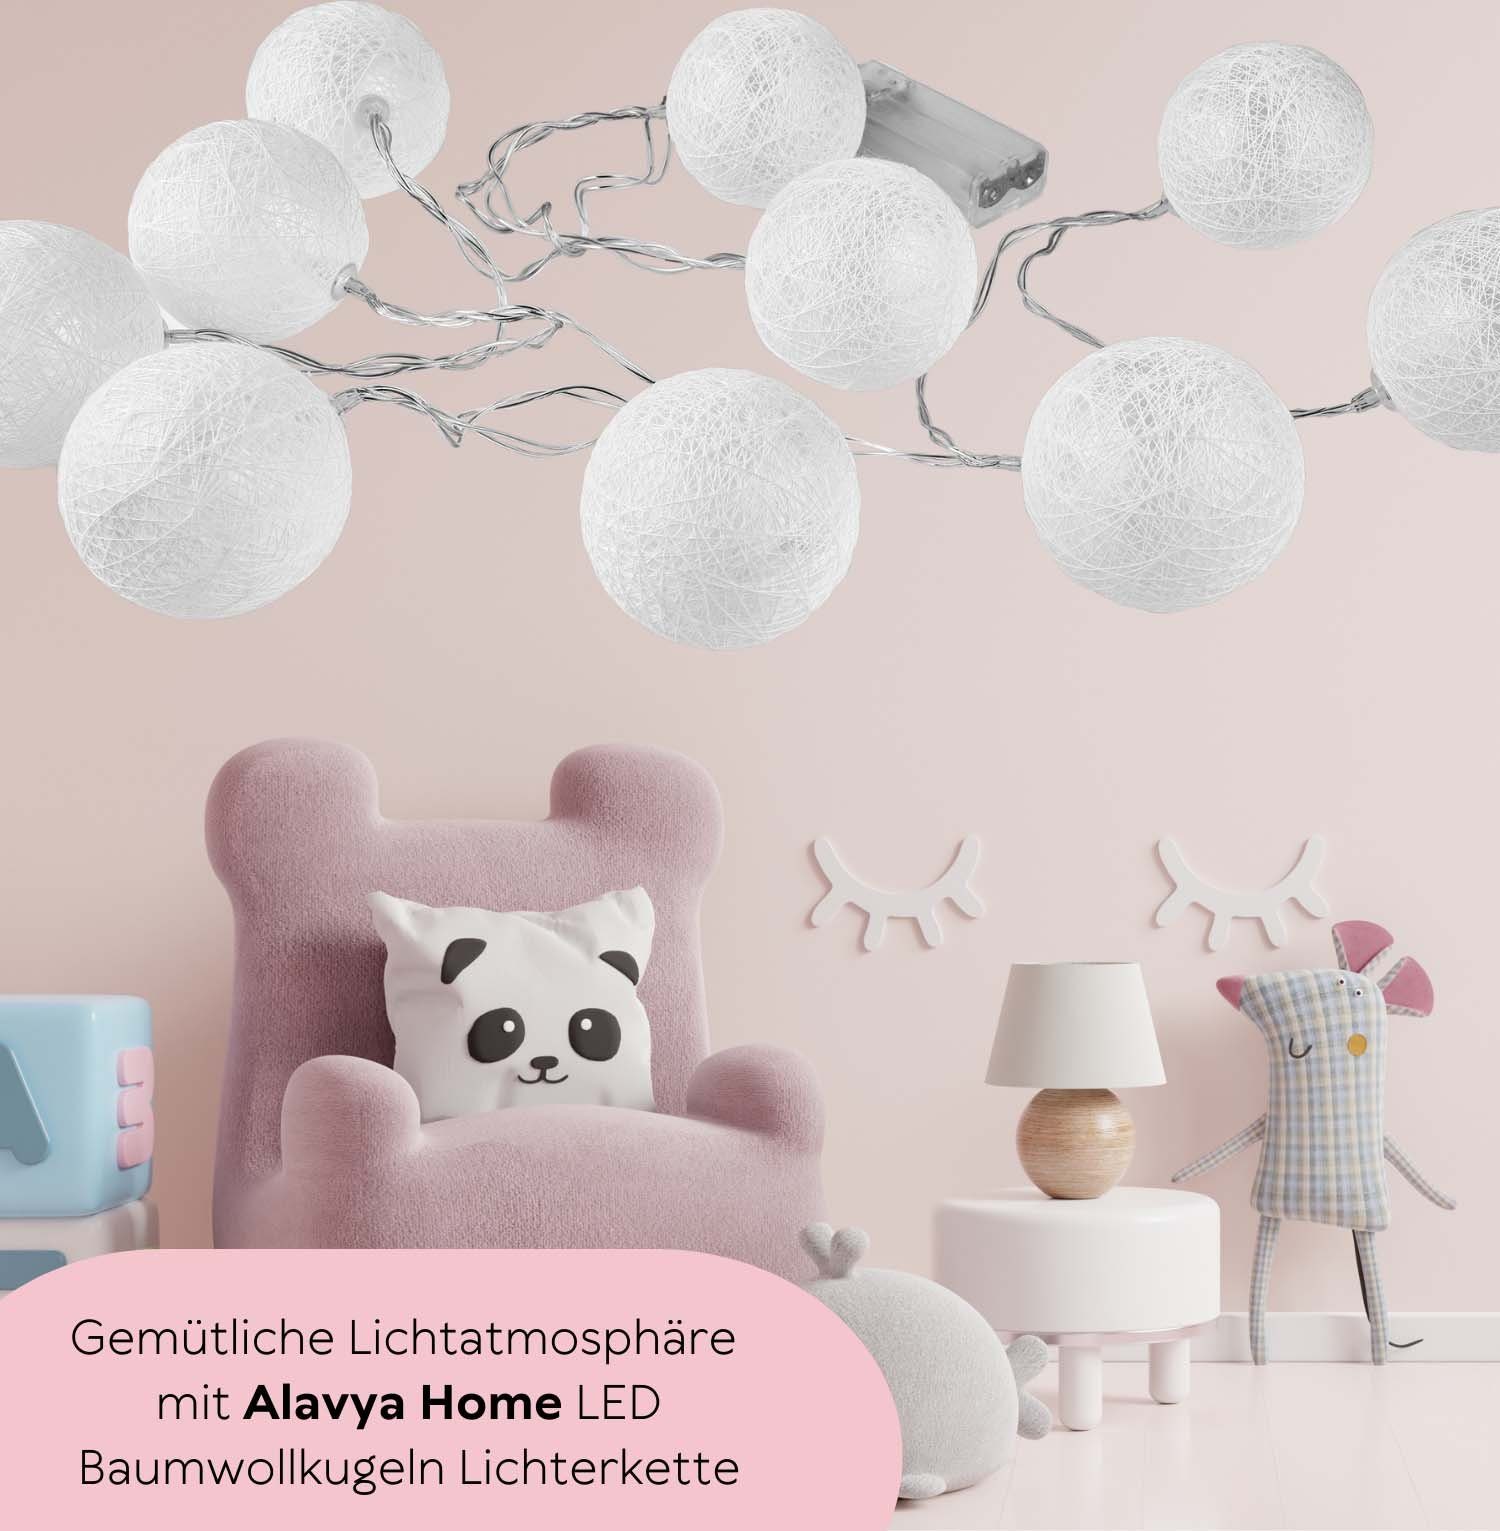 Alavya Home® LED-Lichterkette Lichterkette Cotton Lichterketten betrieben 10-flammig, 10 Ball, 1.5M 2AA Kugel mit LED-Licht Batterie